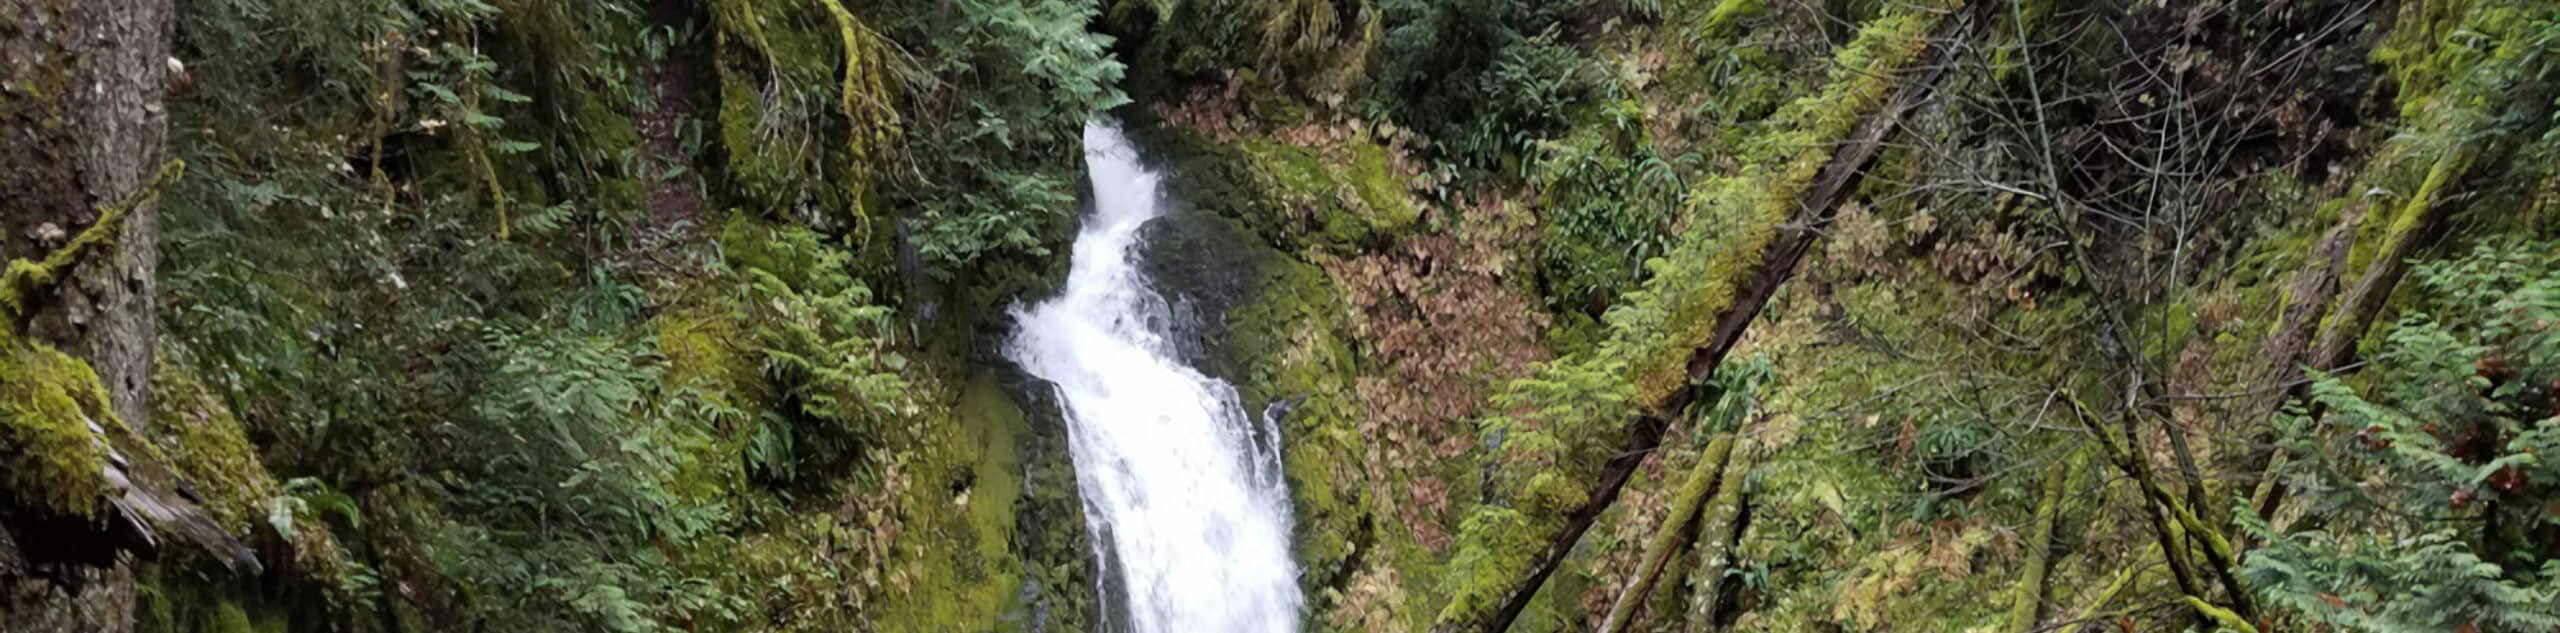 Hemlock Falls Trail